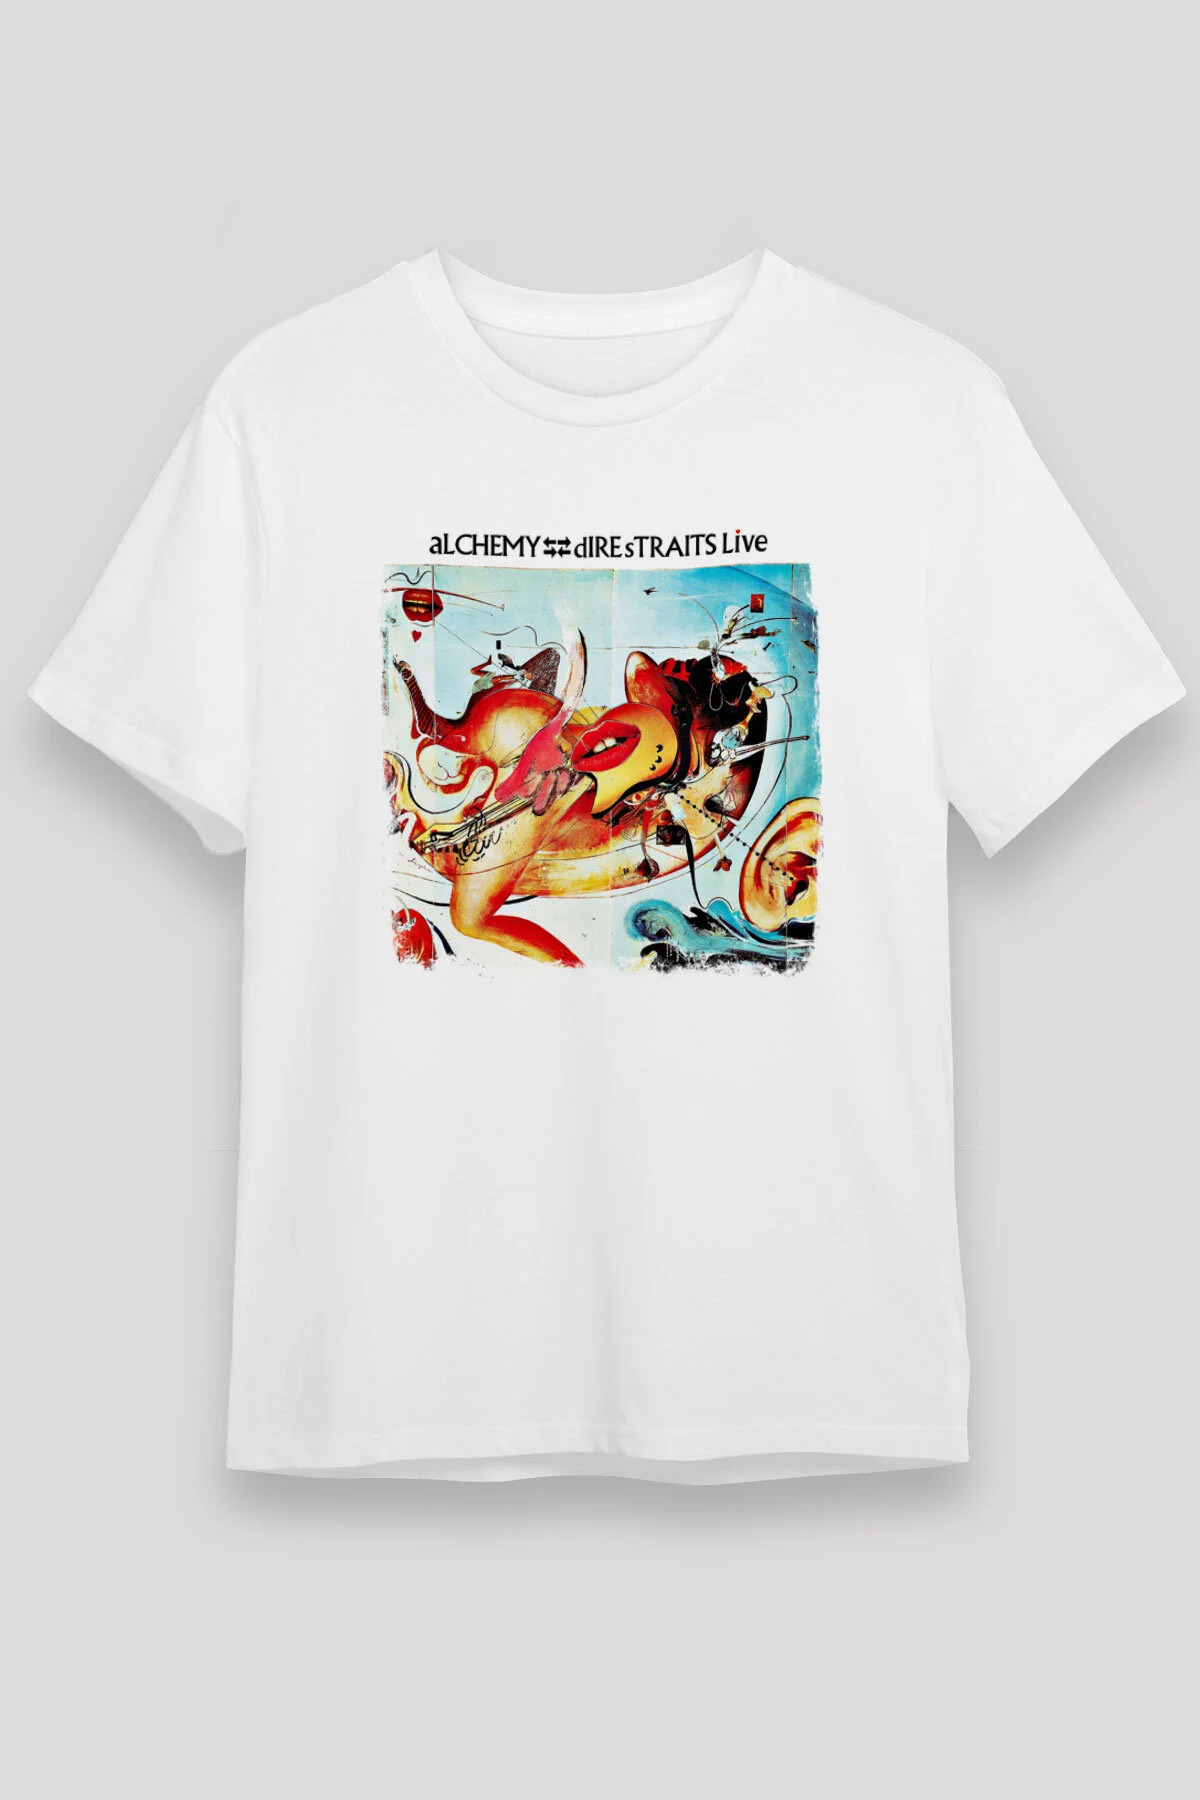 Dire Straits  T shirt , Music Band ,Unisex Tshirt 09/